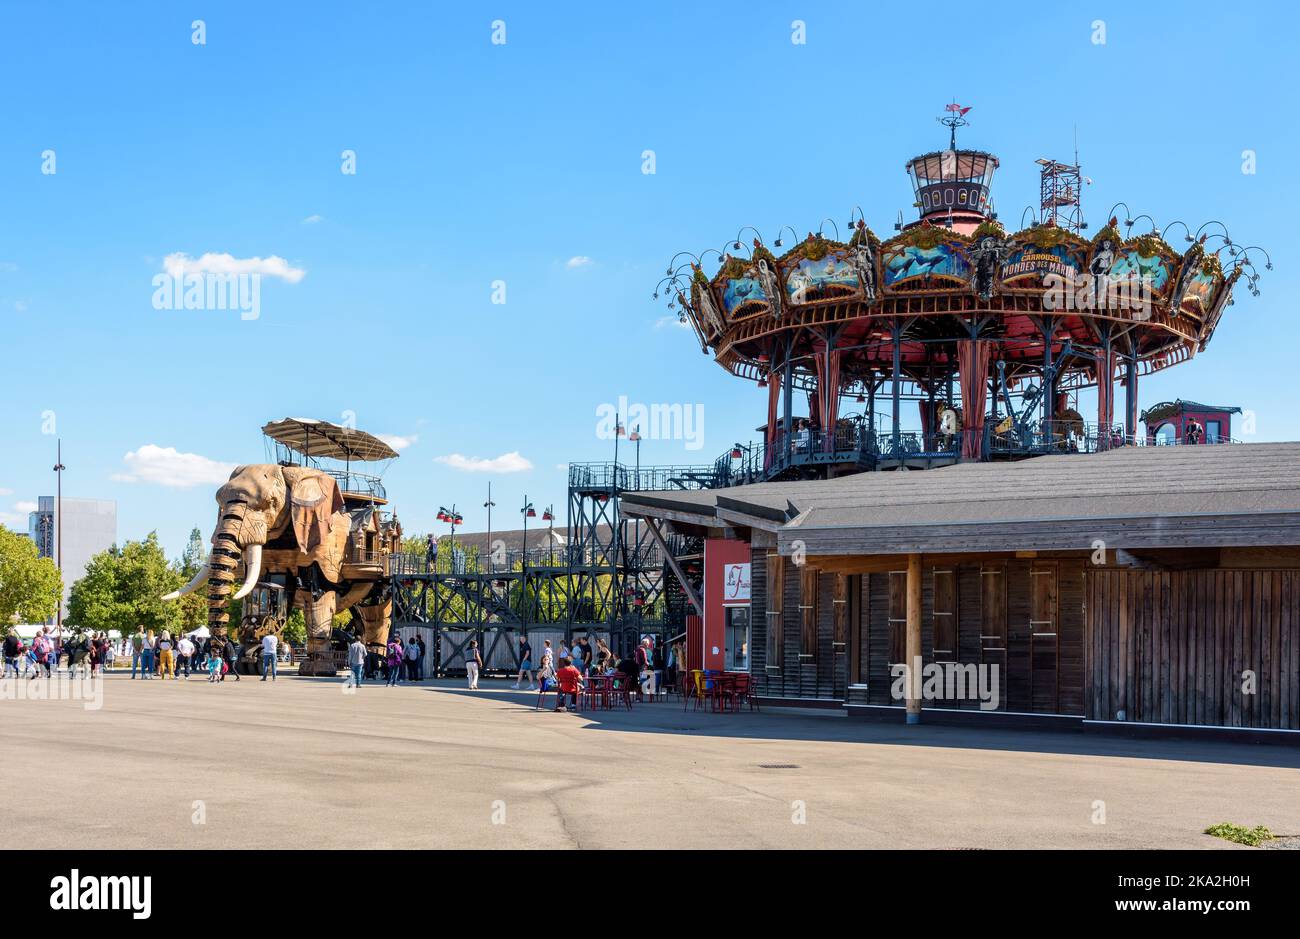 La marionnette géante du grand éléphant, qui fait partie des machines de l'attraction touristique de l'île de Nantes, est ancrée au carrousel des mondes marins. Banque D'Images